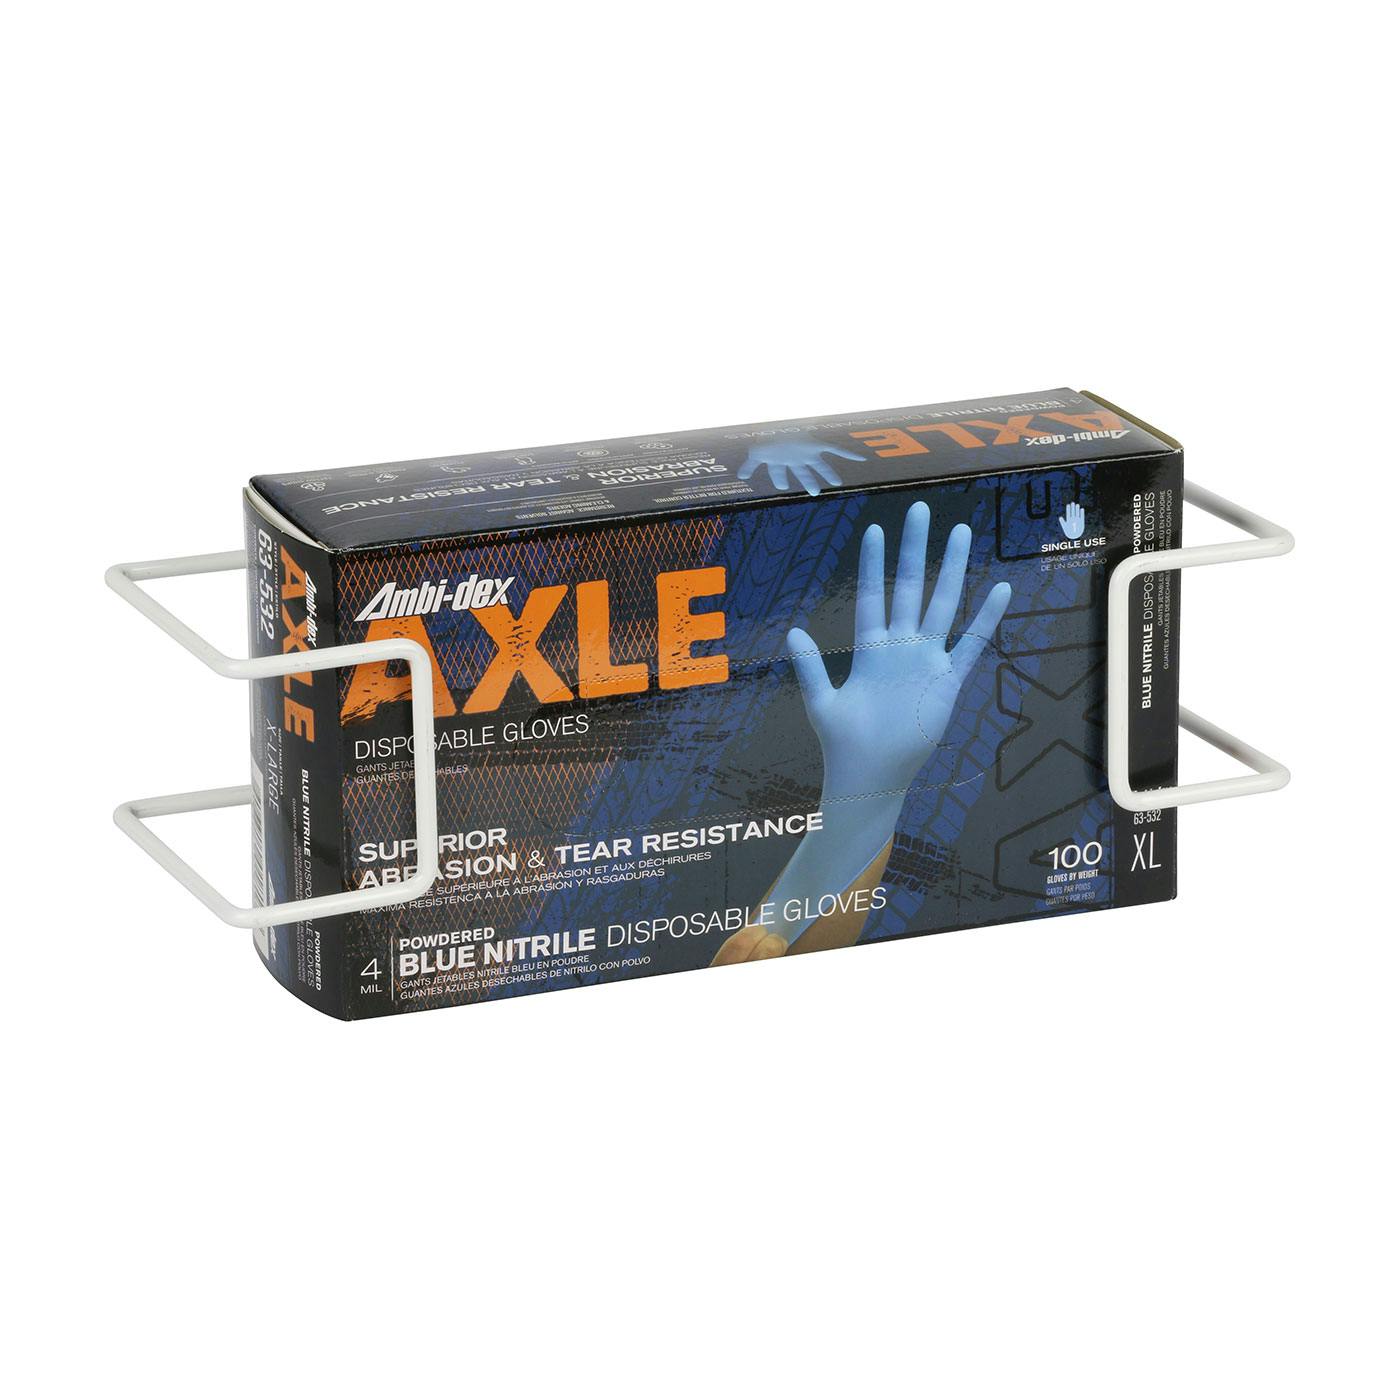 Disposable Glove Dispenser Box Holder, White (64-WB01) - OS